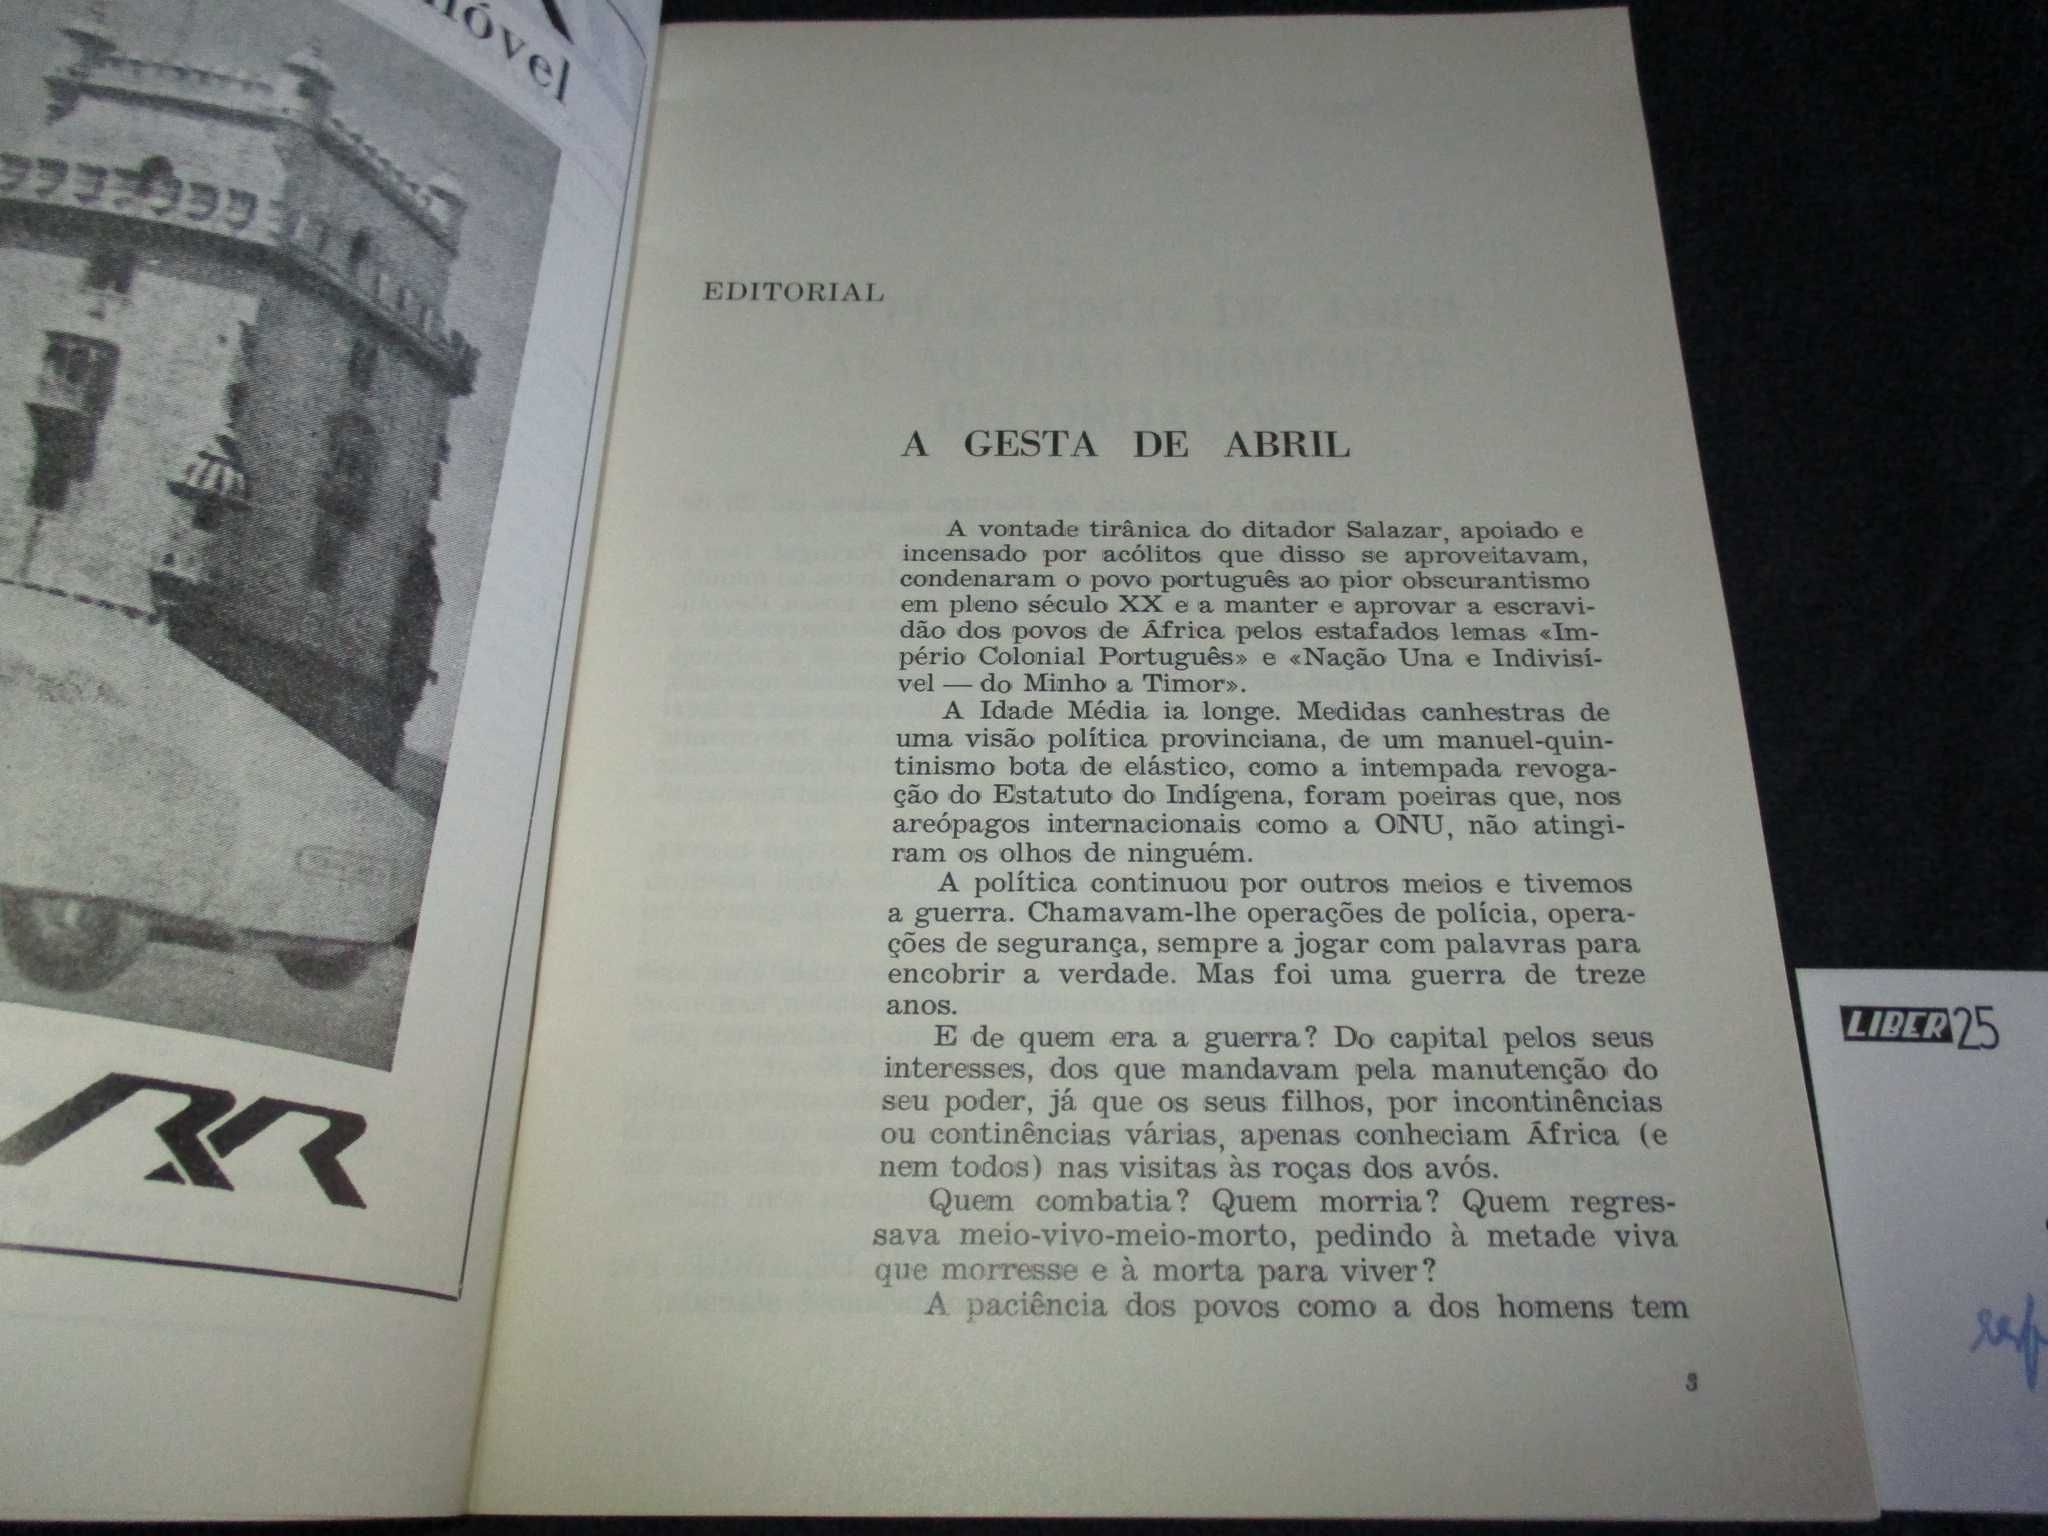 Liber 25 Revista Militar para Civis nº 7 Abril 1982